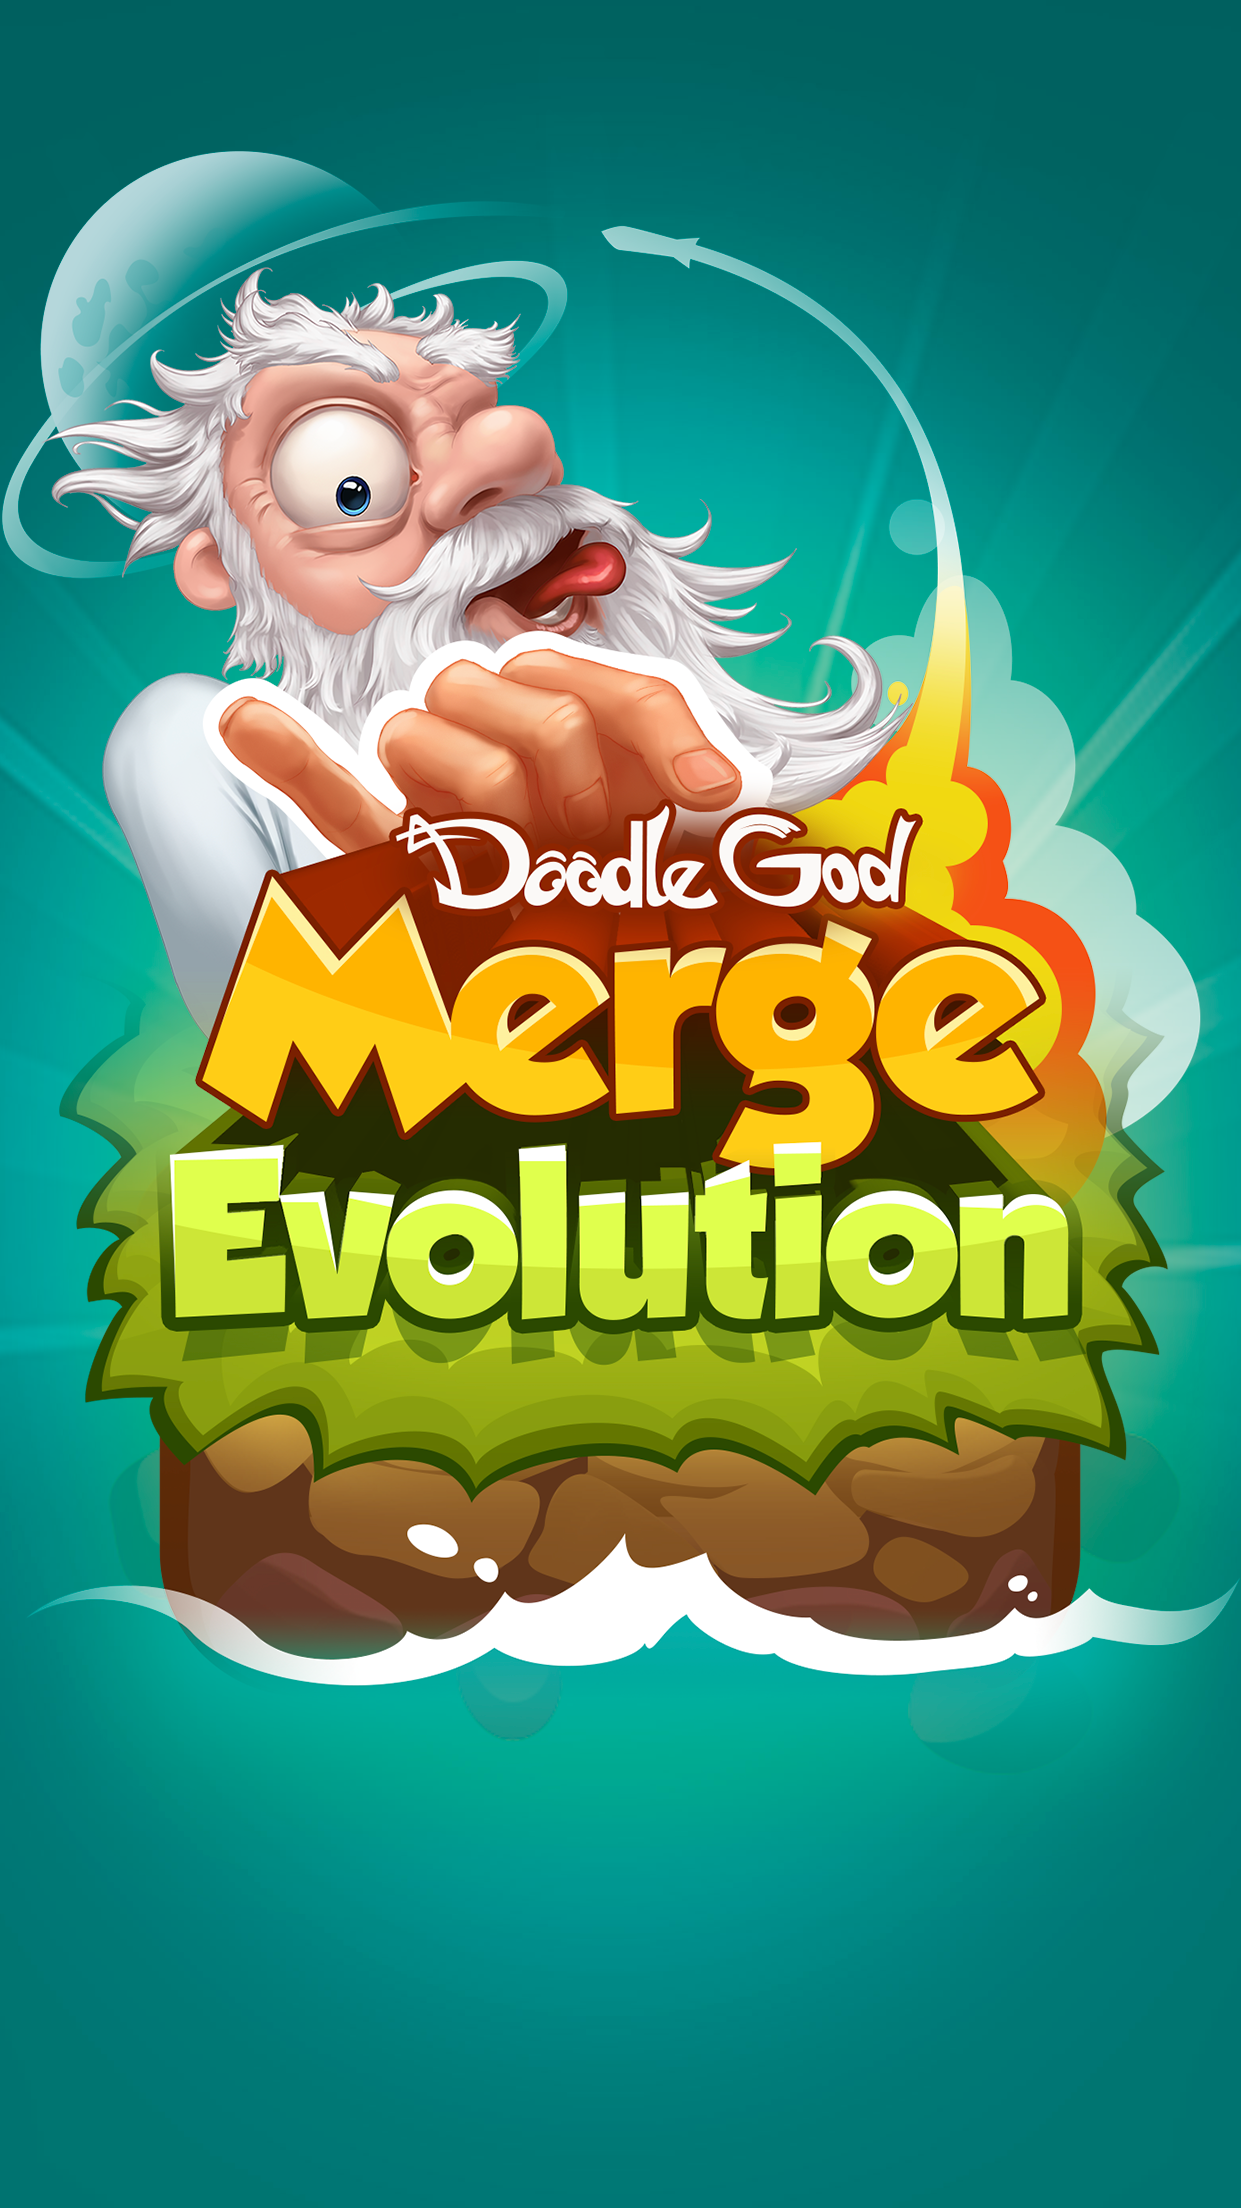 Doodle God: Merge Evolutionのキャプチャ